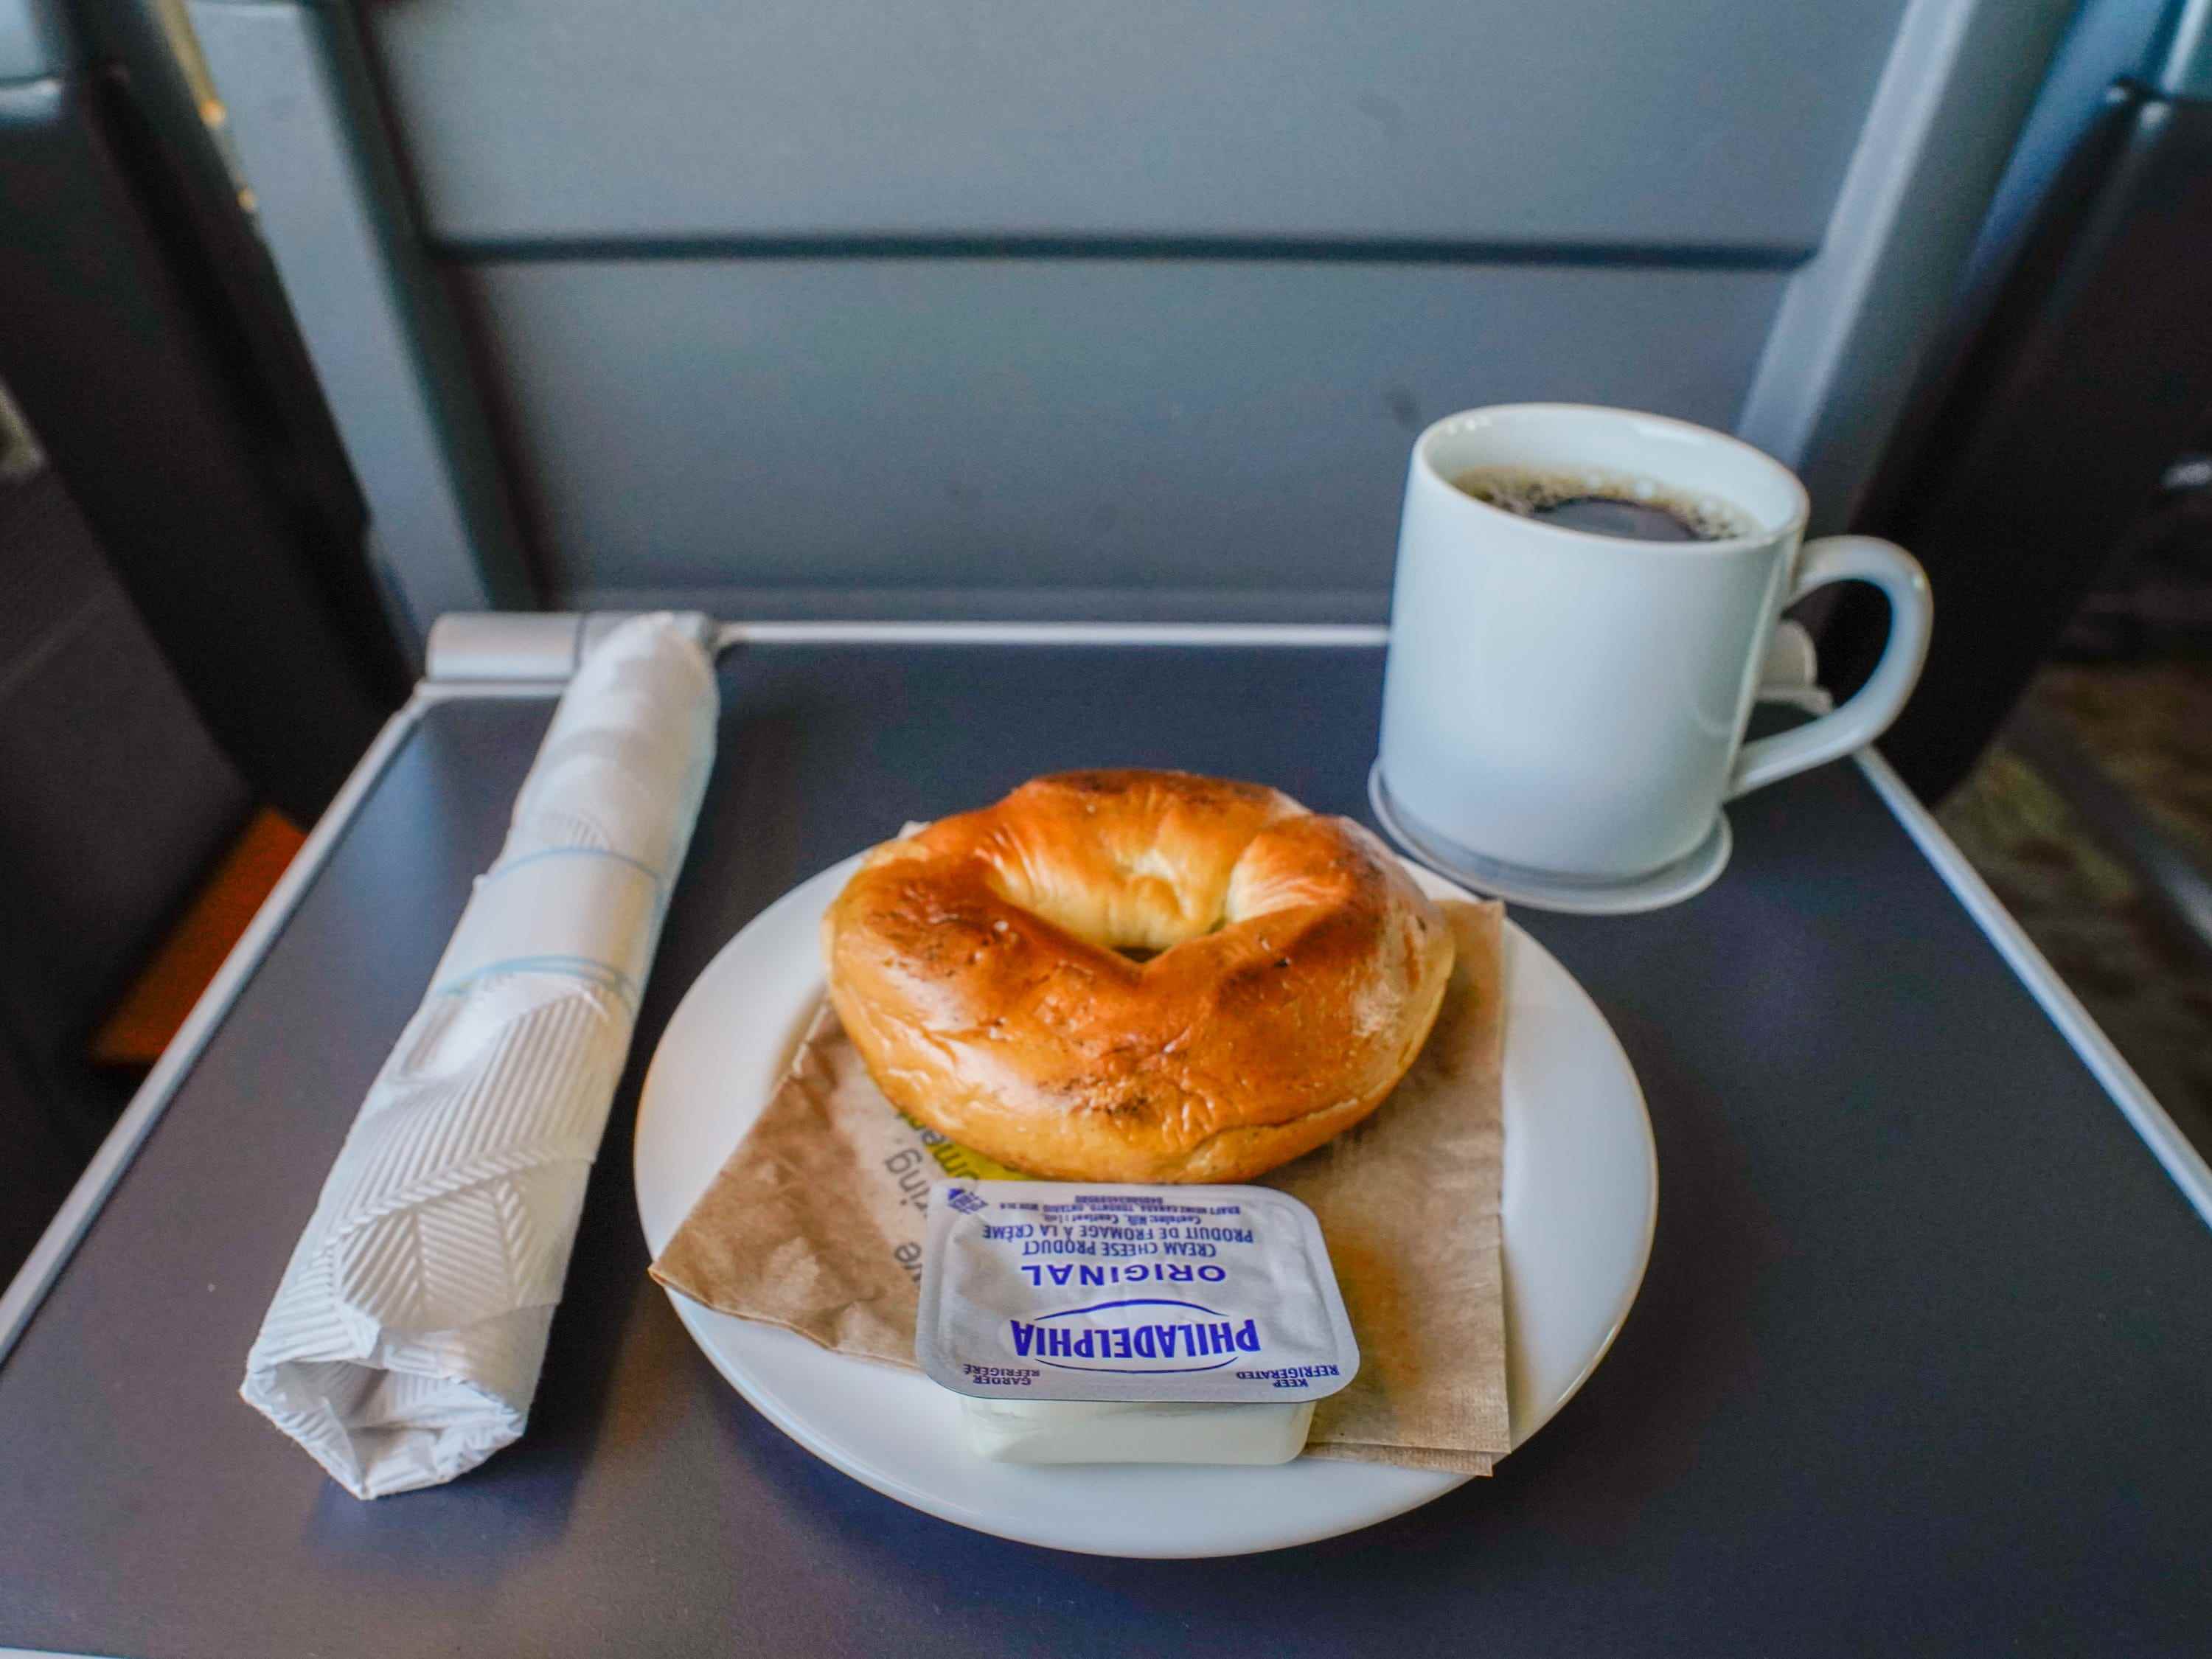 Das Frühstück des Autors im Zug